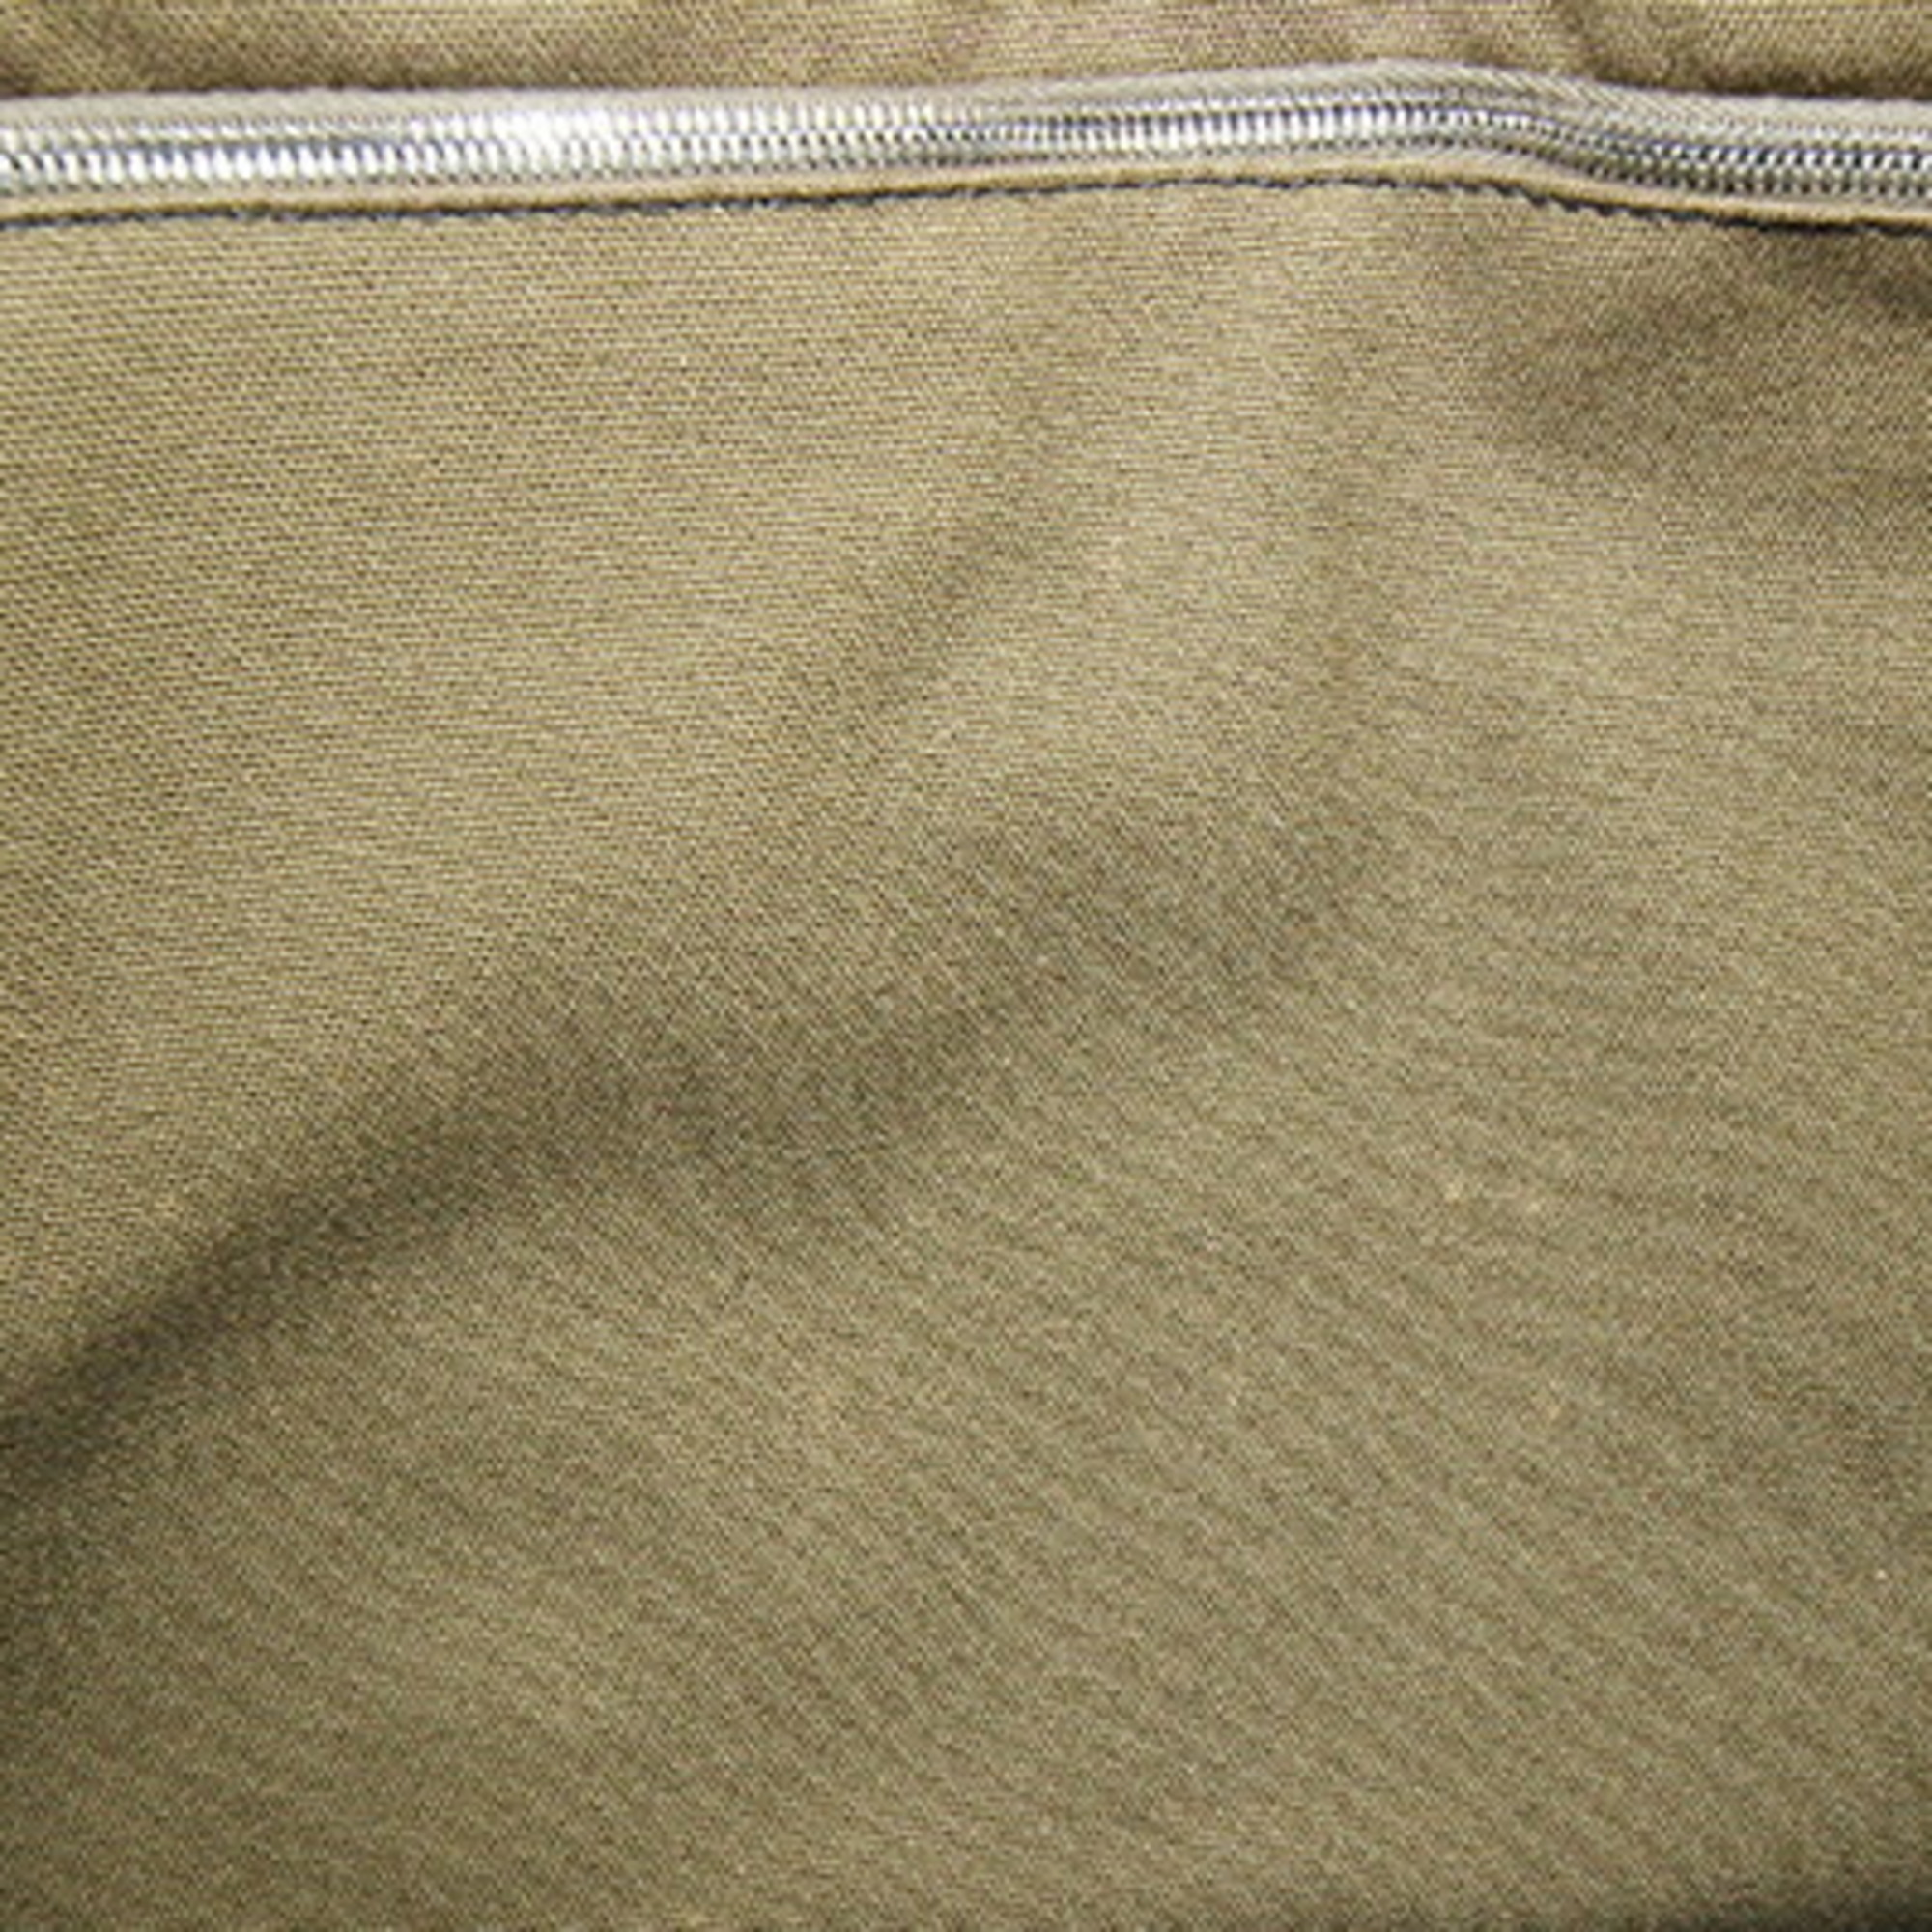 Hermes Handbag Foult Tote MM Olive Navy Cotton Canvas Bag Women's Men's HERMES